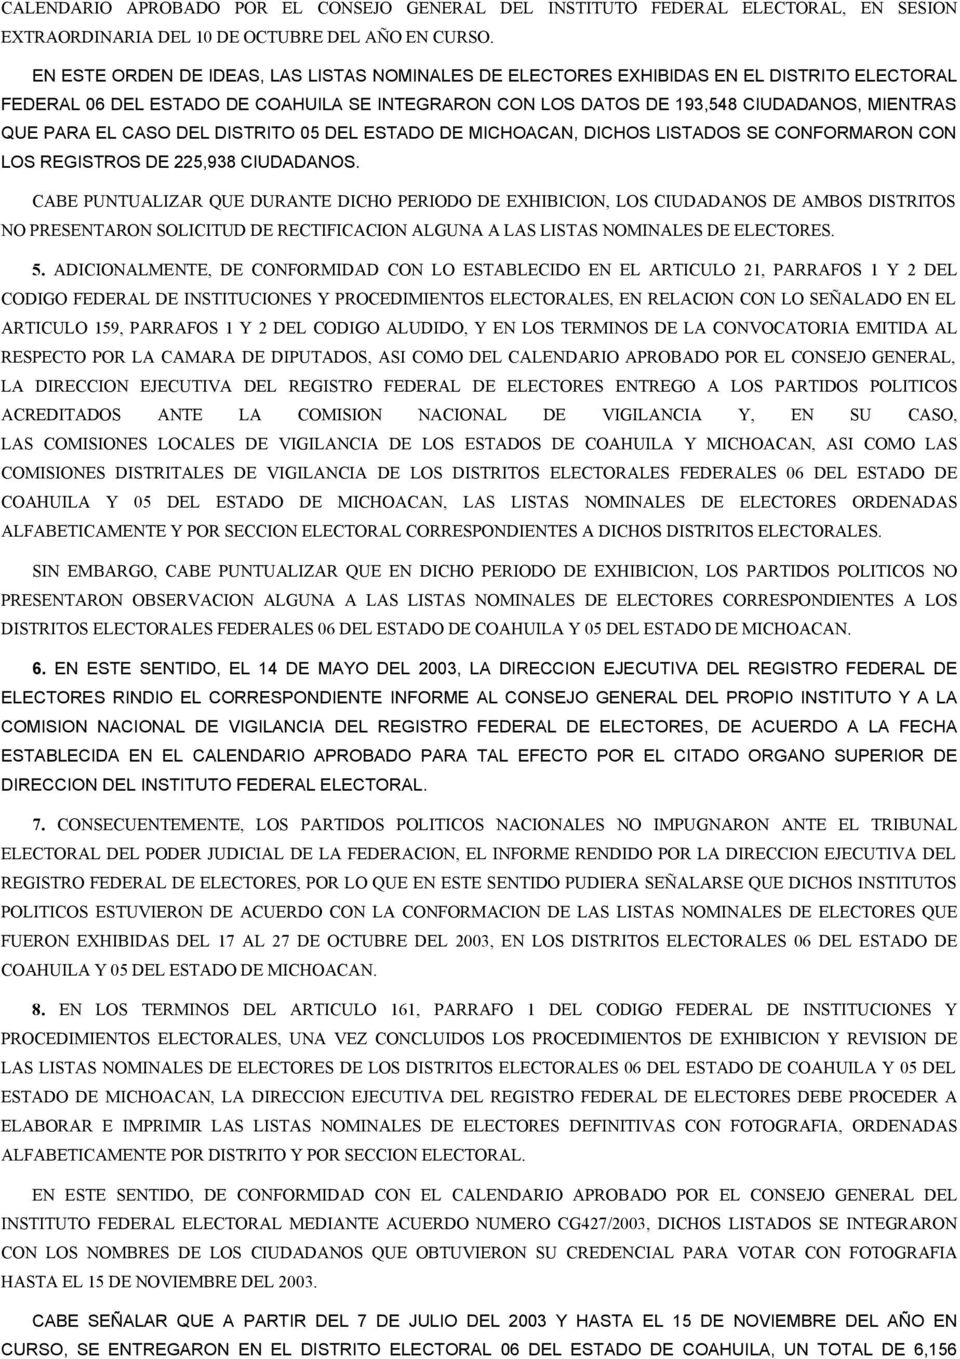 CASO DEL DISTRITO 05 DEL ESTADO DE MICHOACAN, DICHOS LISTADOS SE CONFORMARON CON LOS REGISTROS DE 225,938 CIUDADANOS.